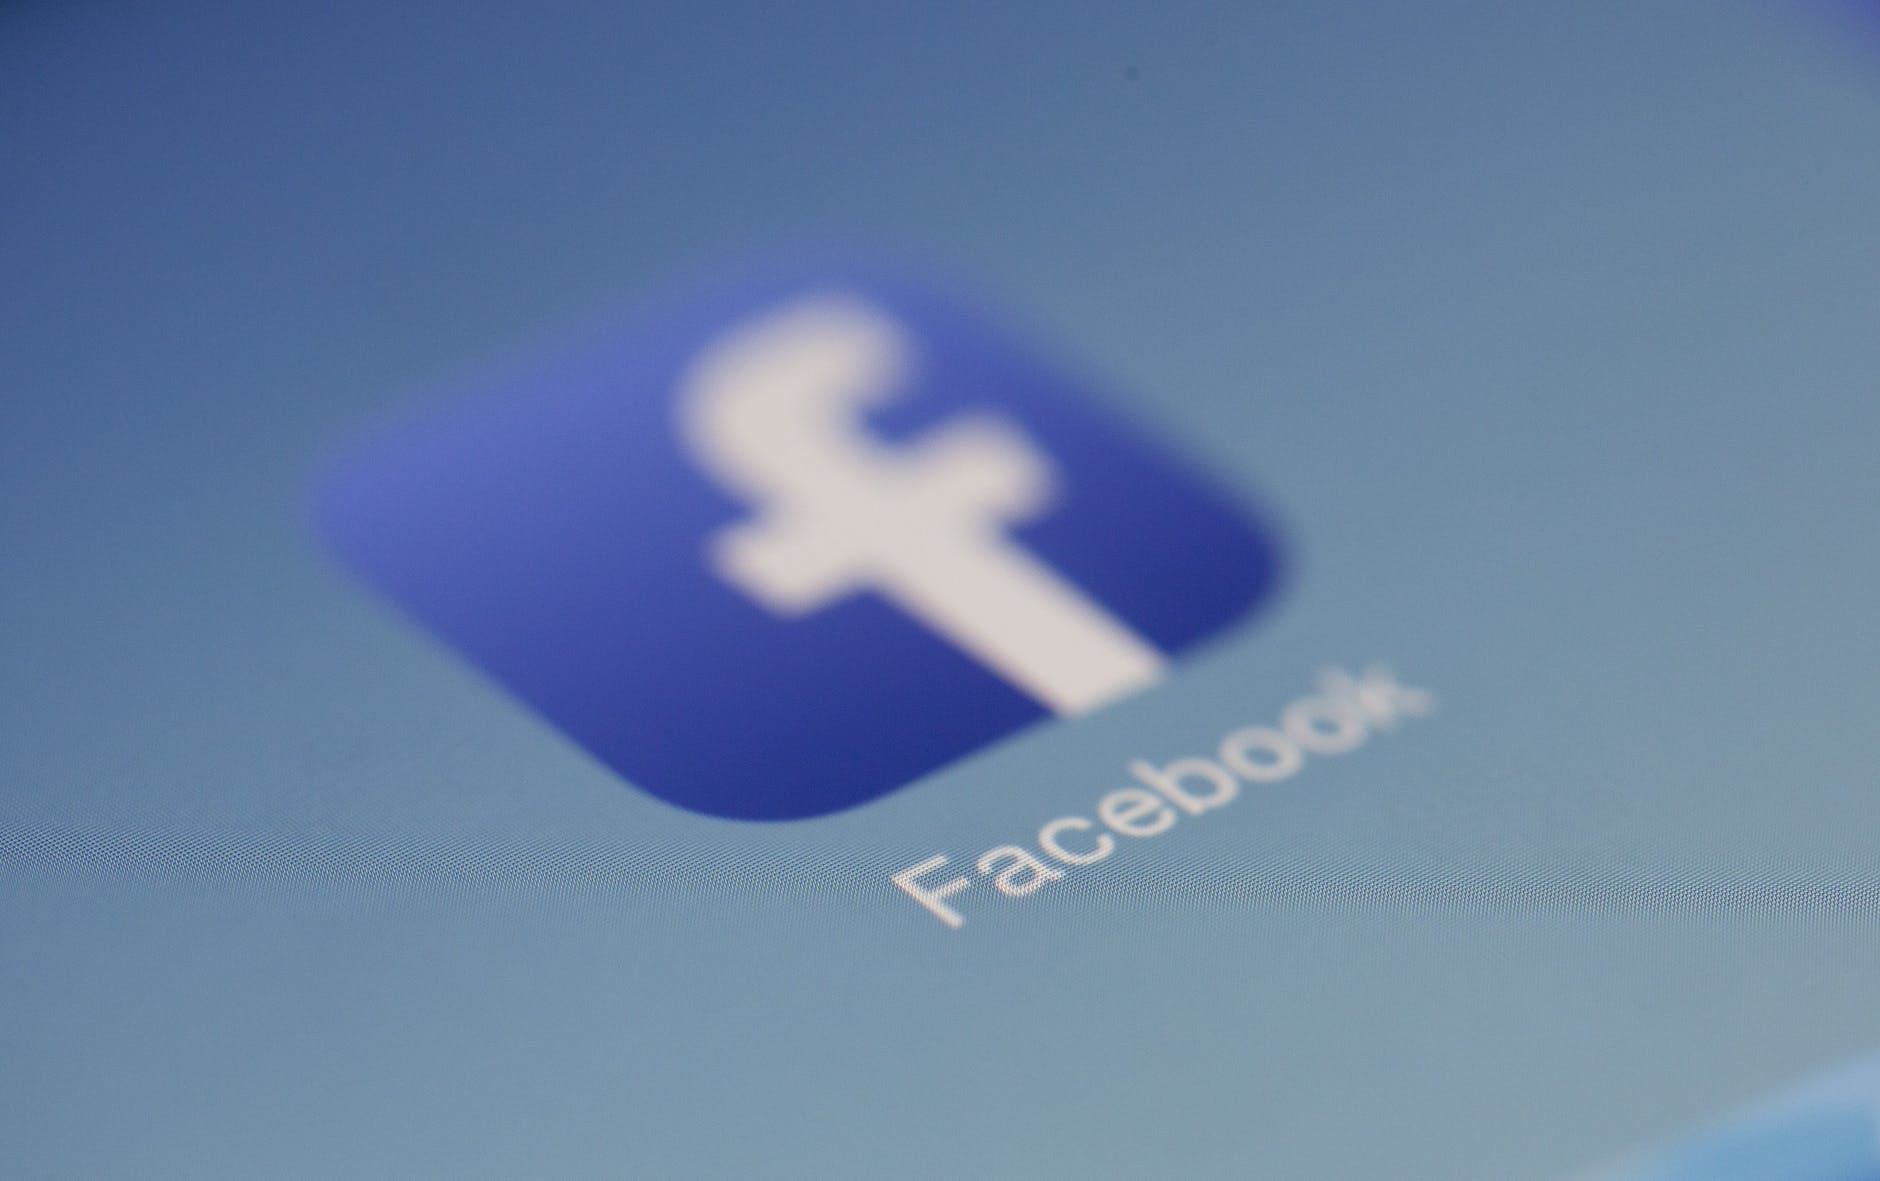 Facebook a scos știrile de pe rețeaua socială